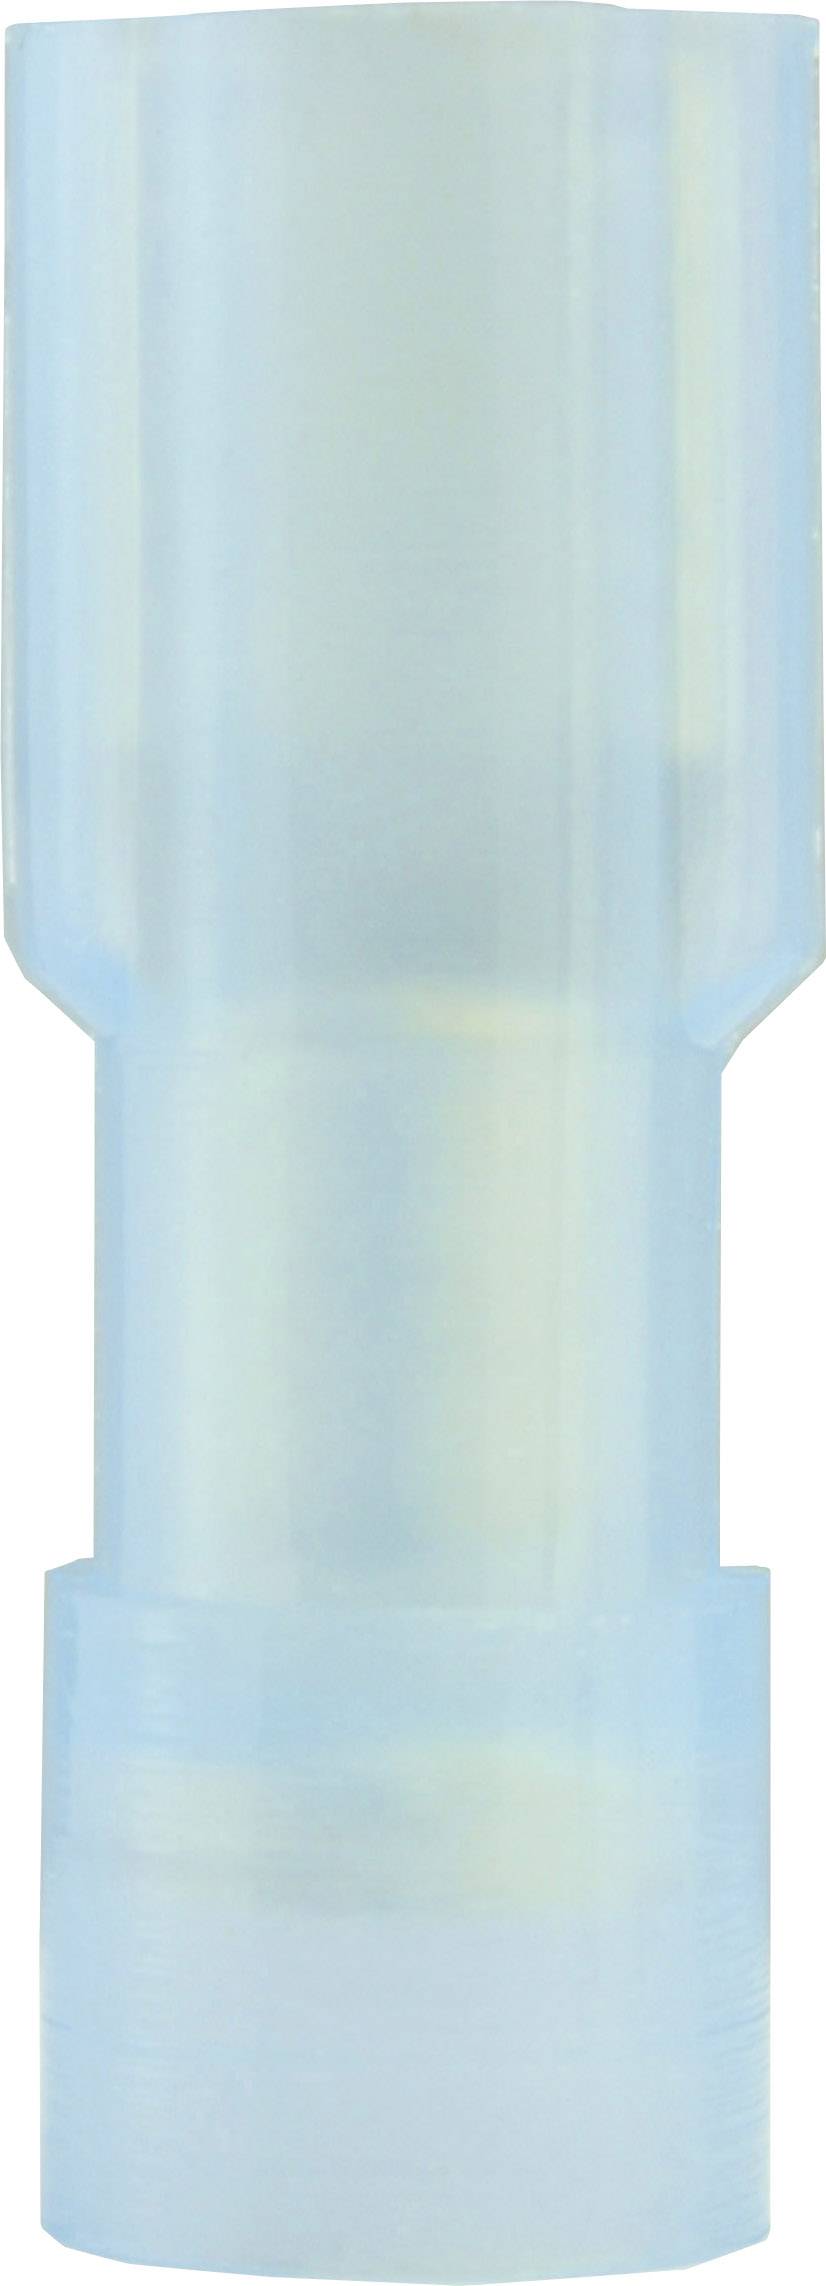 VOGT Flachsteckhülse Steckbreite: 4.8 mm Steckdicke: 0.5 mm 180 ° Vollisoliert Blau Vogt Verbindungs